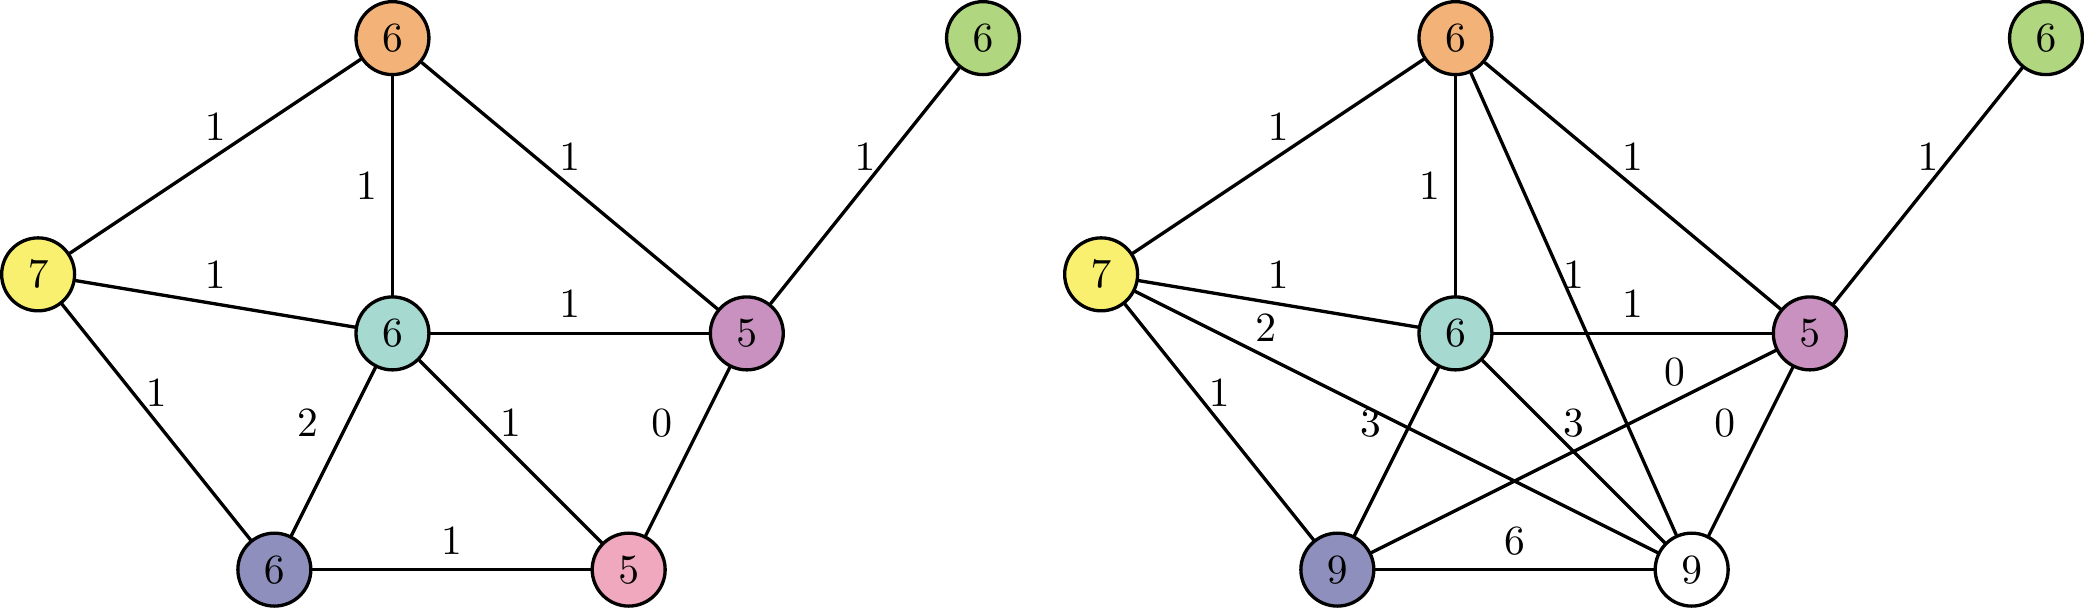 Graphes de cycles associés aux molécules ci-dessus